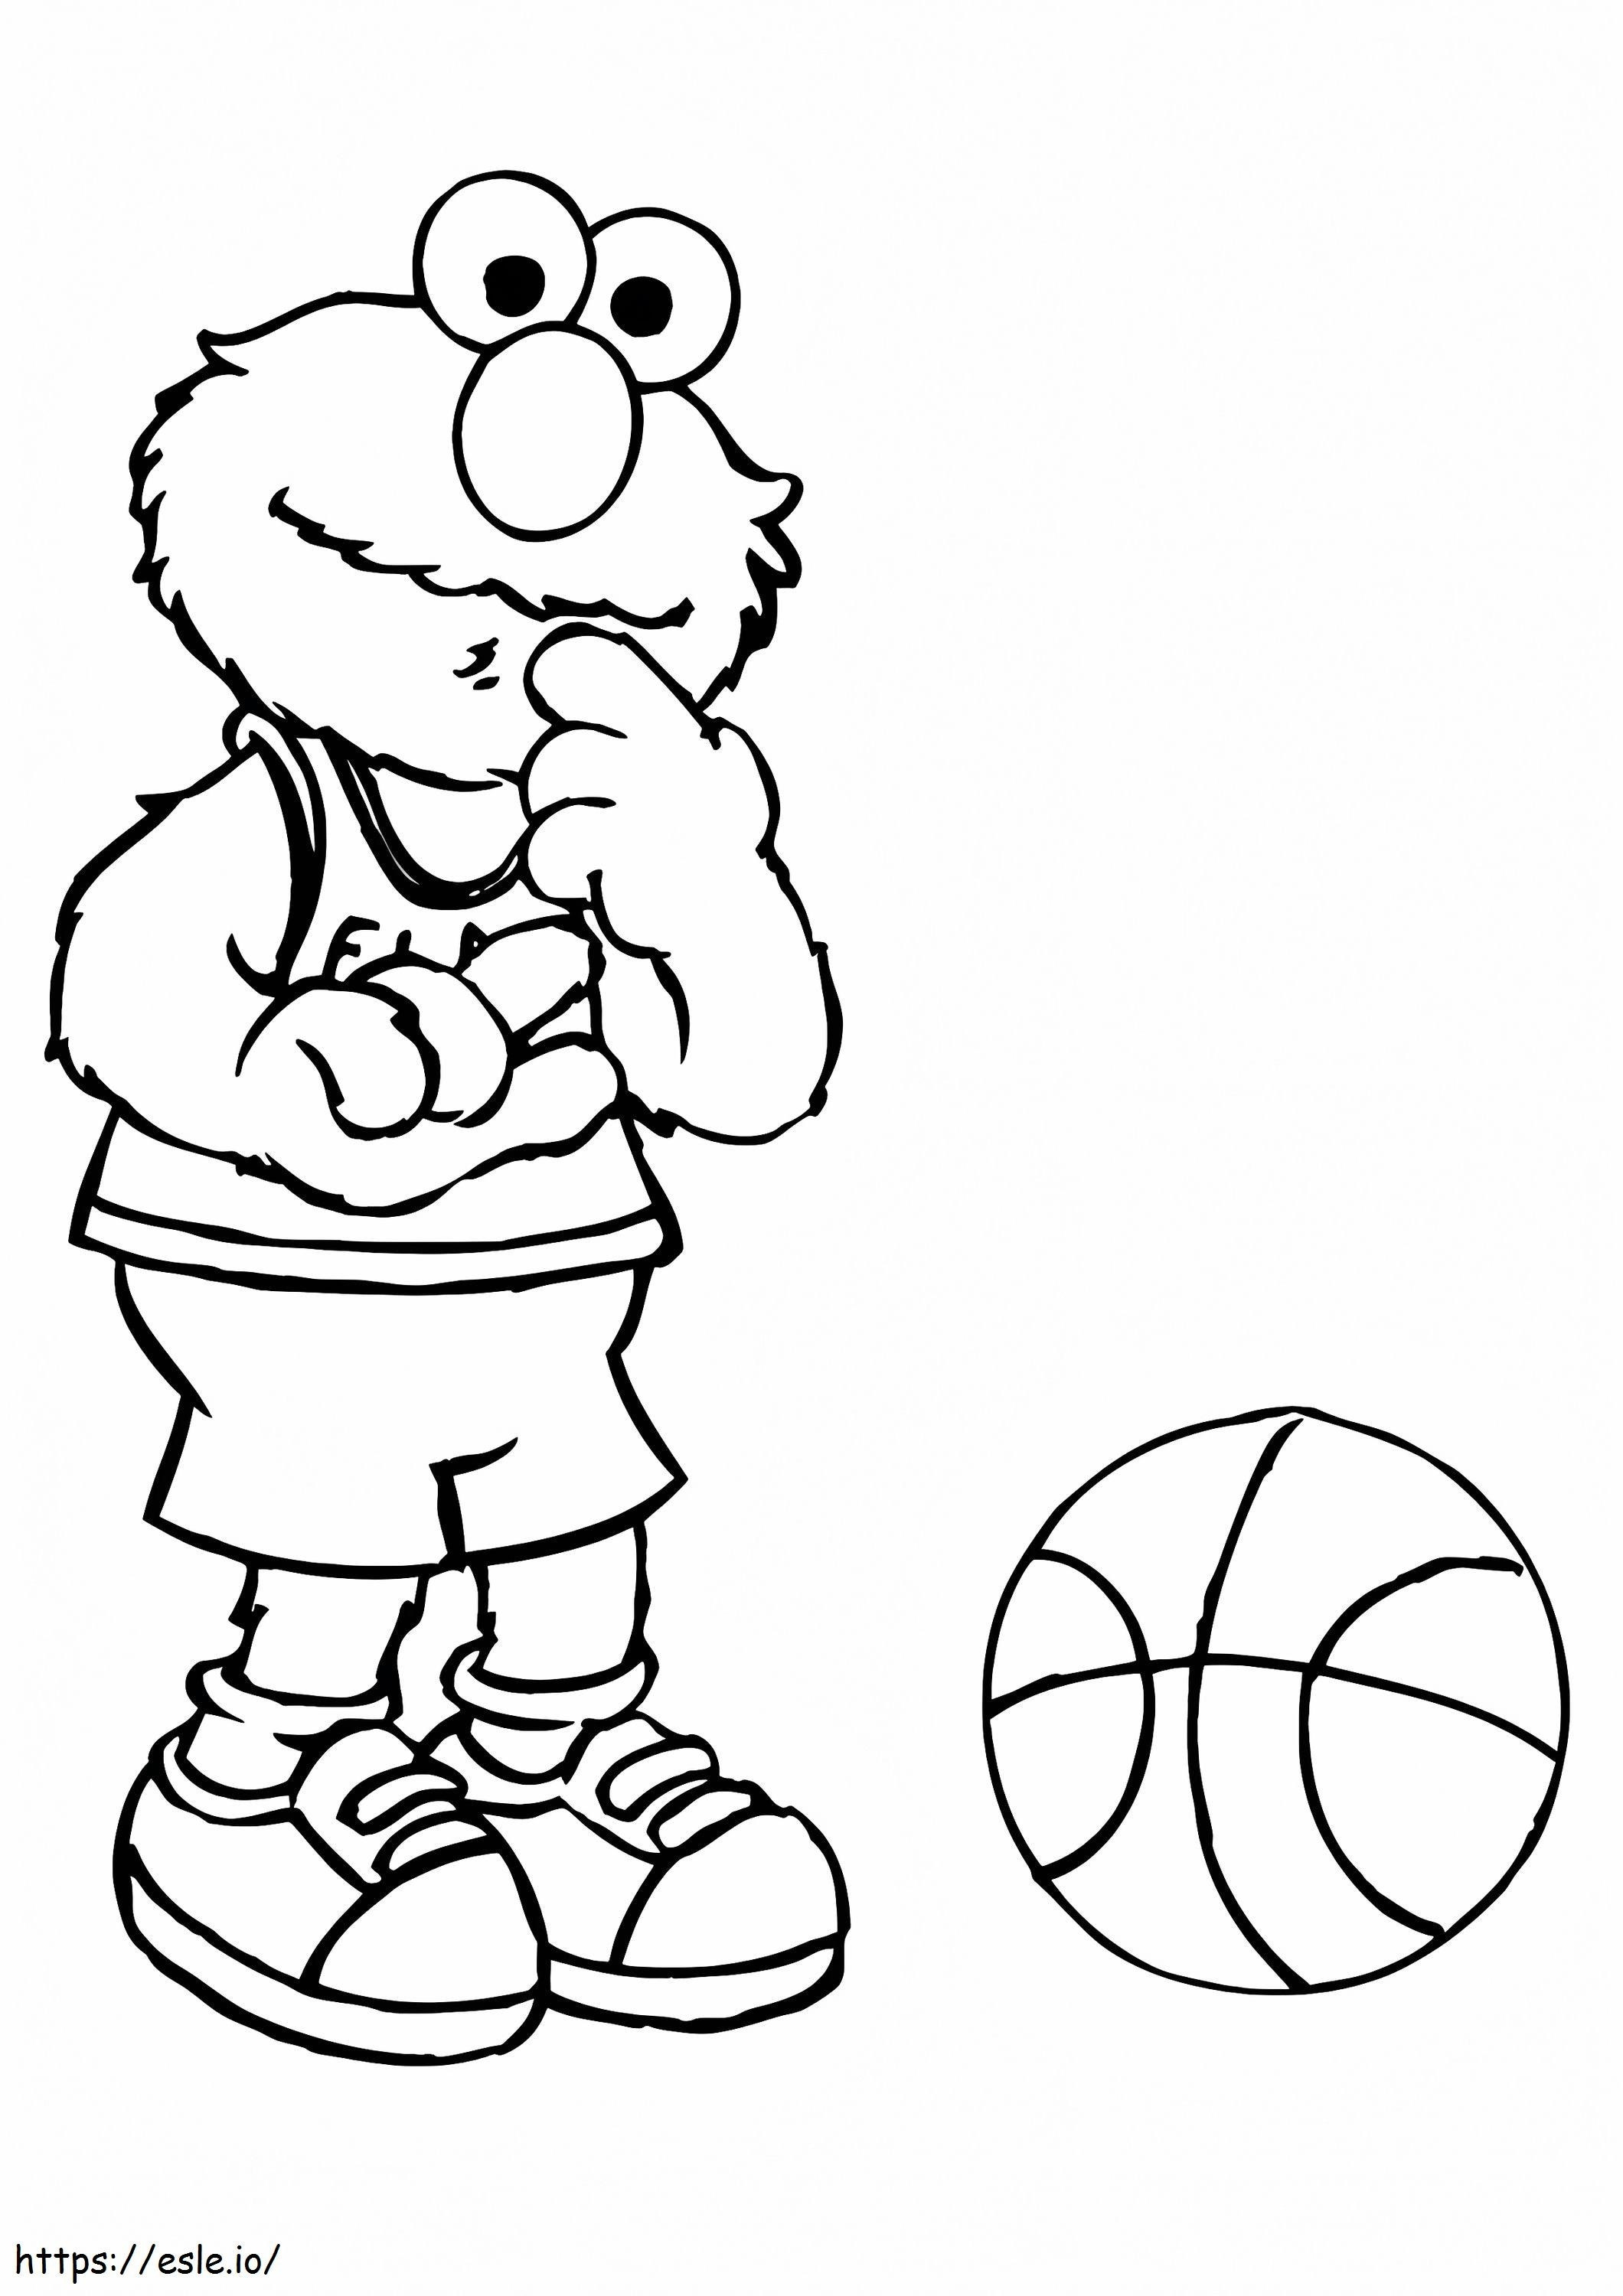 1526905465 Elmo grający w koszykówkę A4 kolorowanka